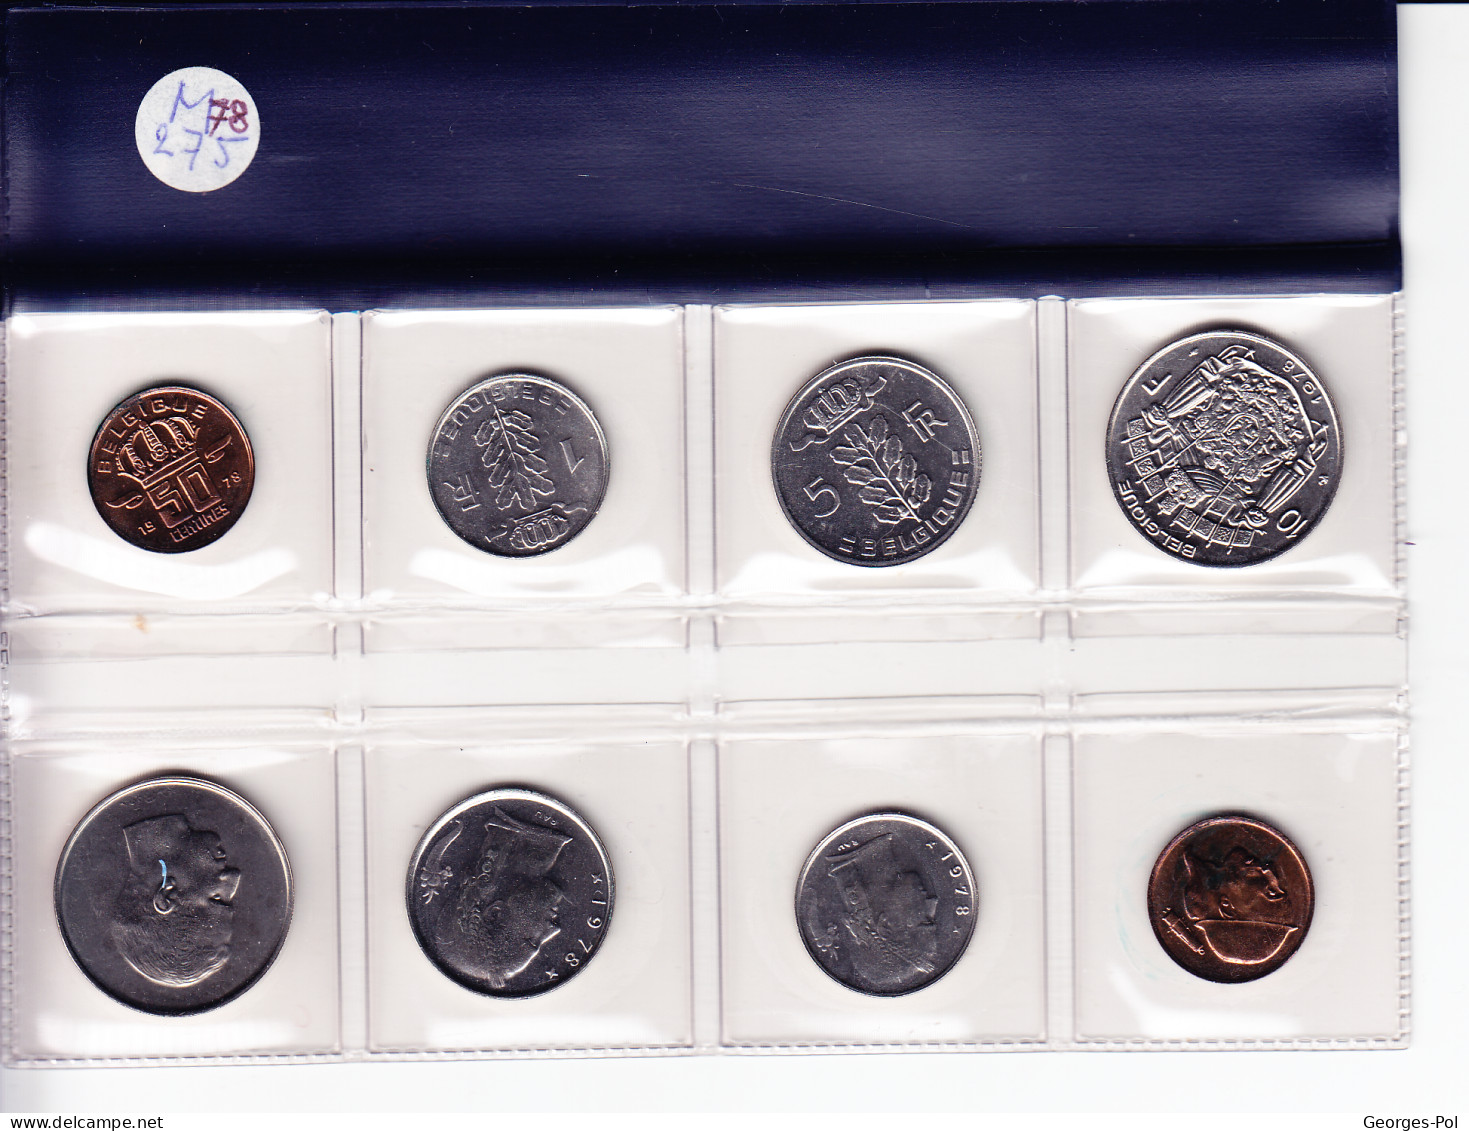 Monnaie Royale De Belgique 1978 Koninklijke Munt Van België.  Carte De 8 Pièces N'ayant Pas Circulé (4 FR + 4 NL) - FDEC, BU, BE & Münzkassetten